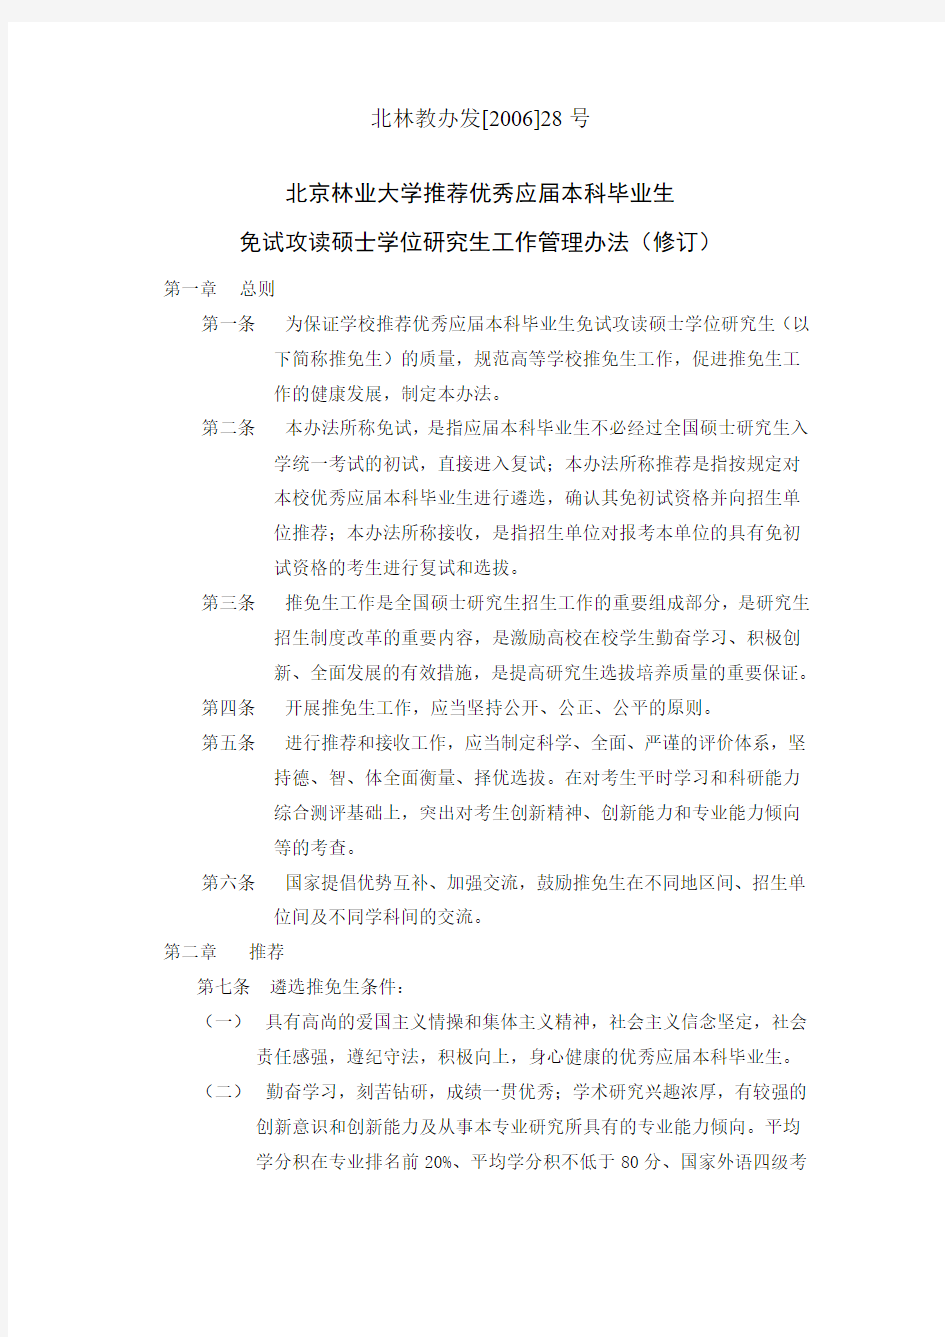 北京林业大学推荐优秀应届本科毕业生免试攻读硕士学位研究生工作管理办法(修订)